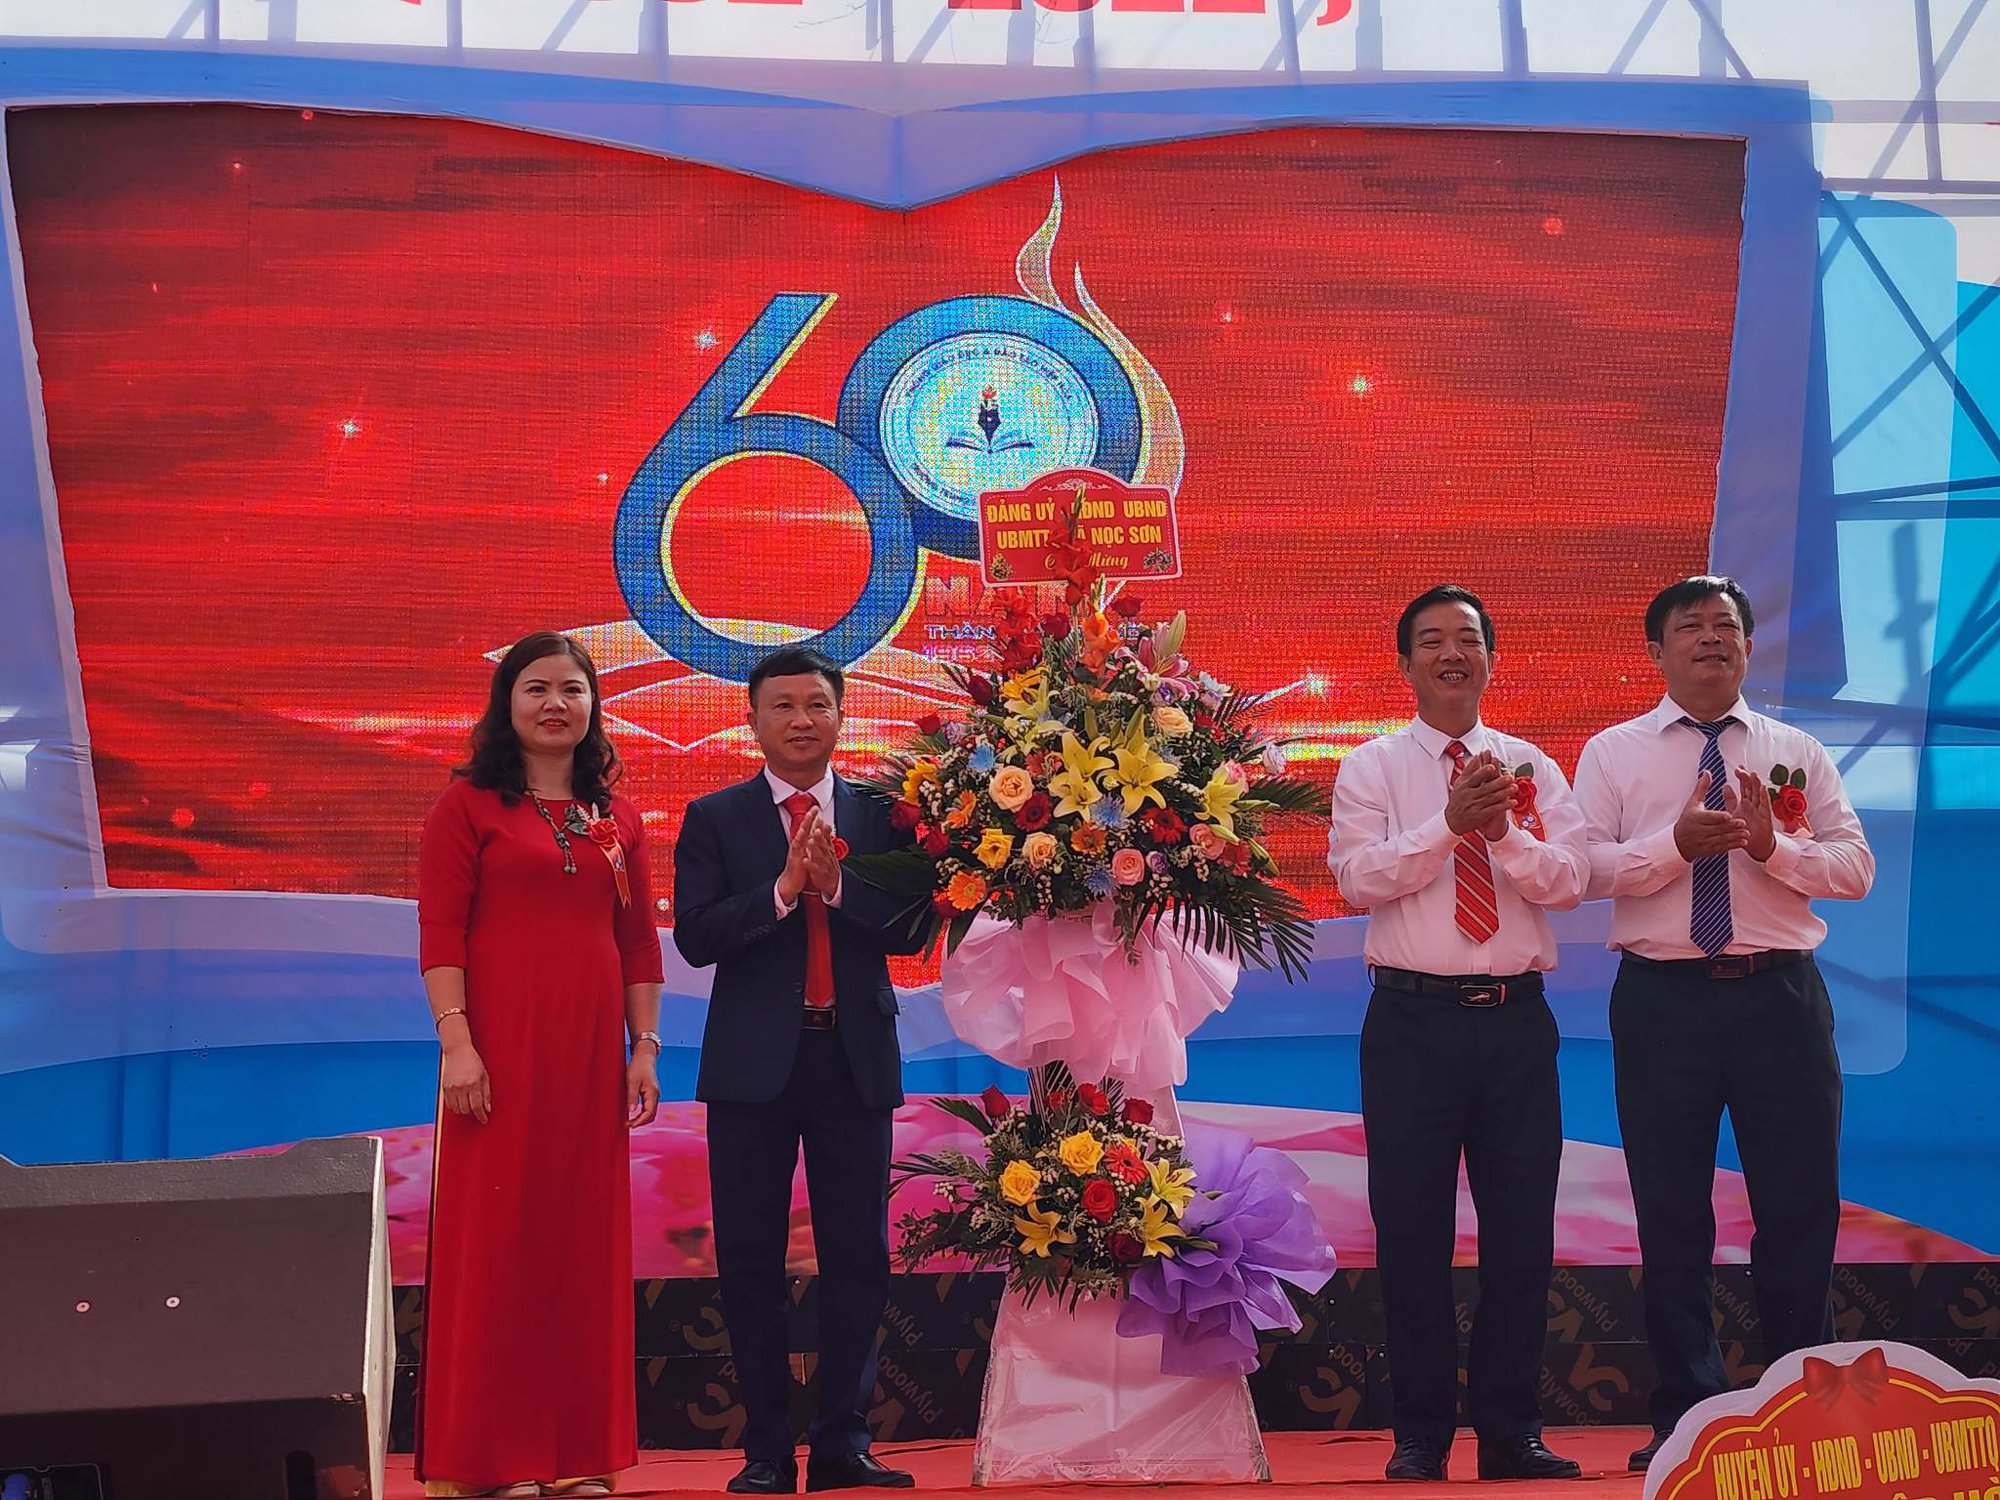 Bắc Giang: Kỉ niệm 60 năm thành lập trường THCS Ngọc Sơn - Ảnh 1.